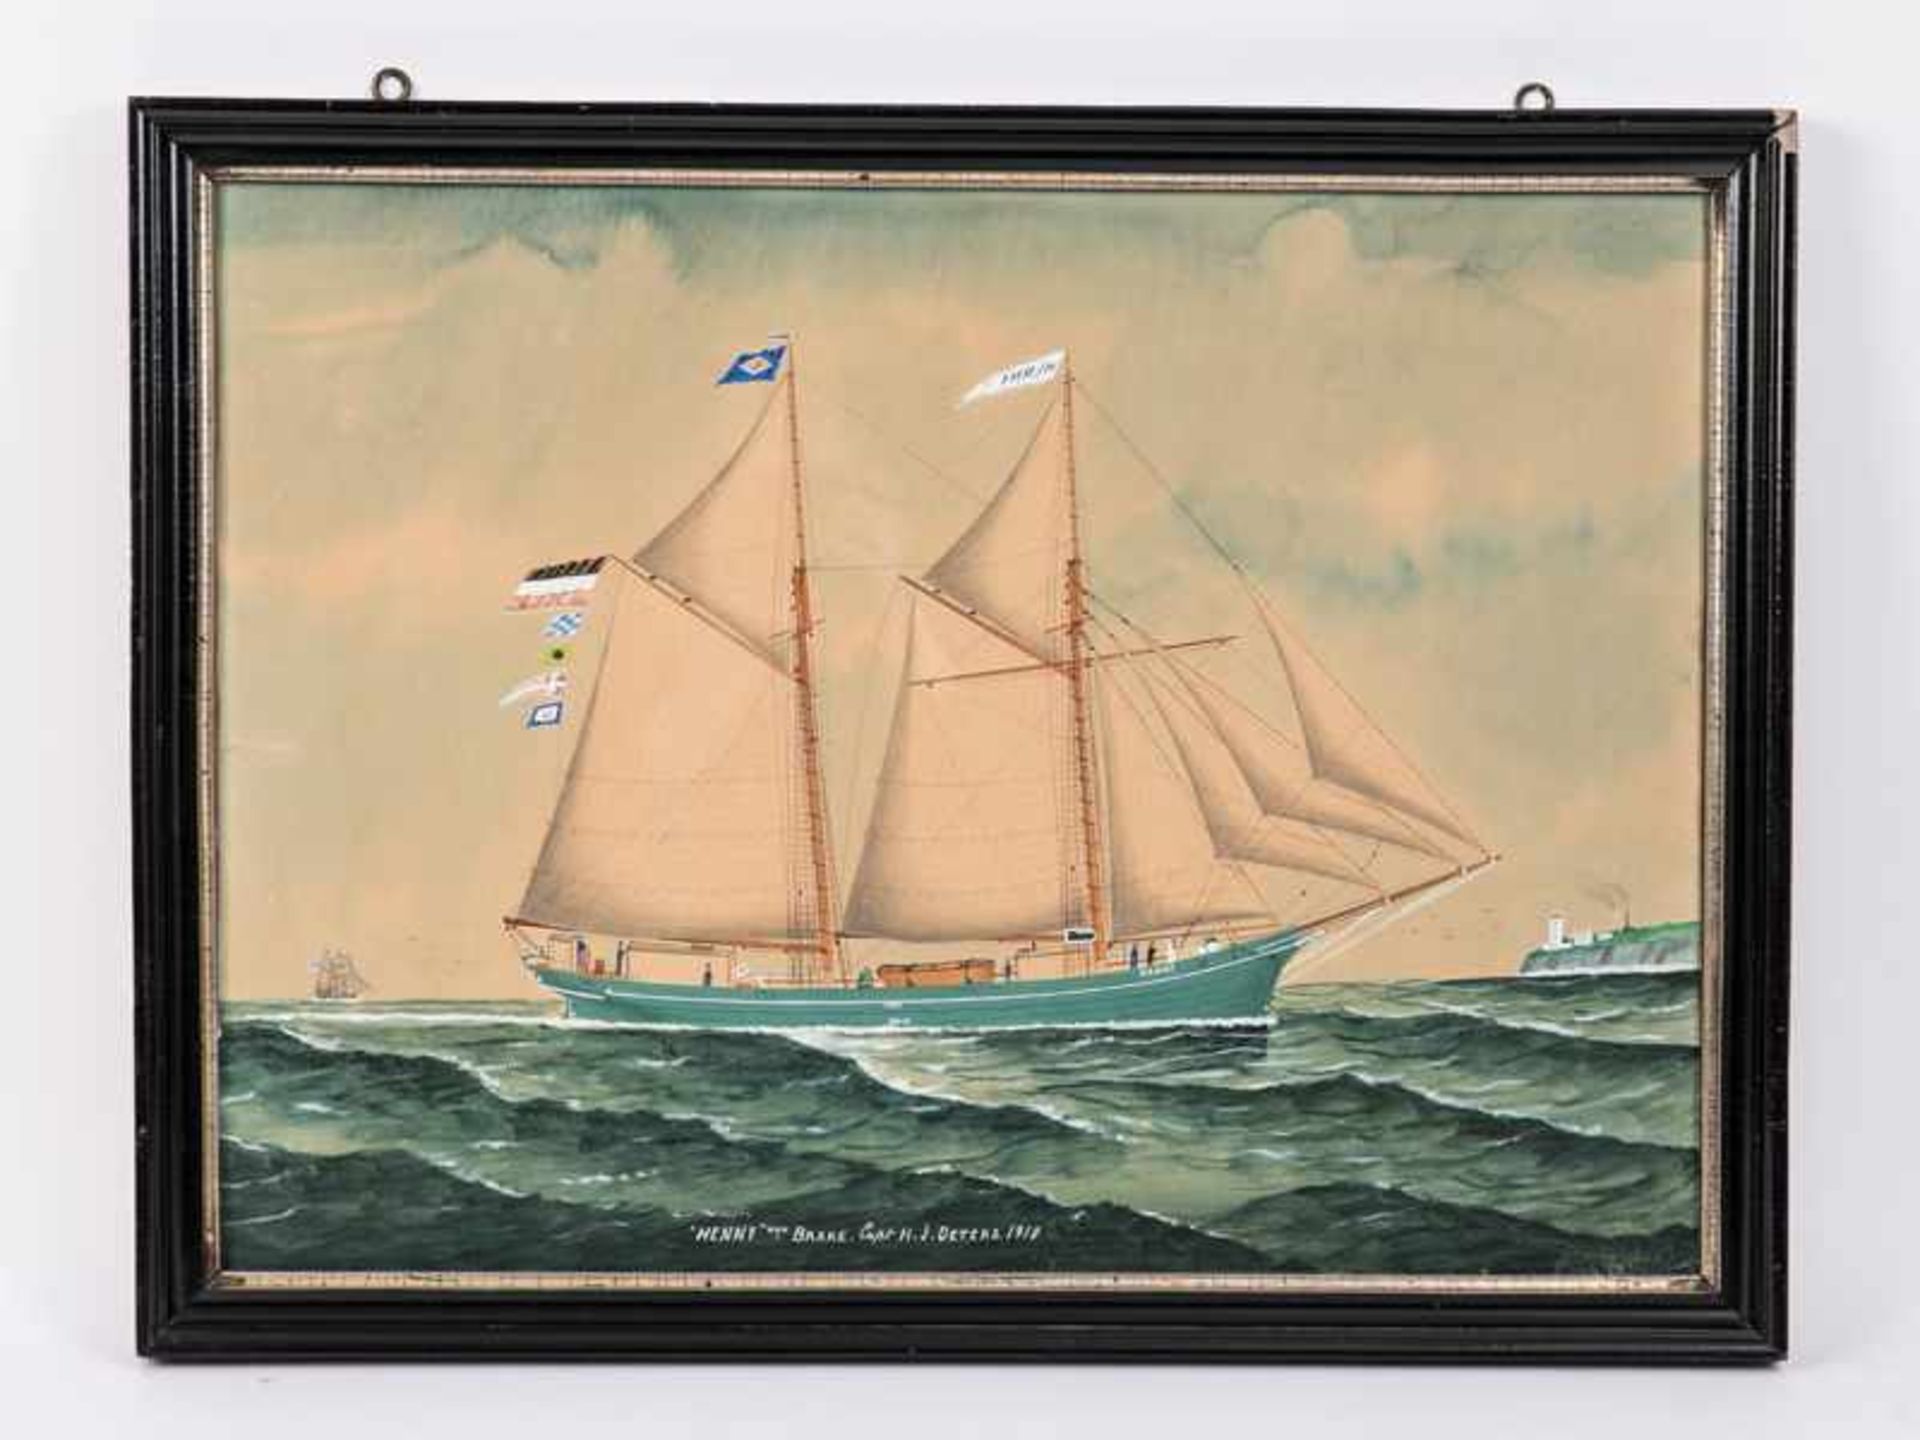 Chappell, Reuben (1870 - 1940), zugeschrieben. Schiffsportrait/Kapitänsbild der Schoneryacht "Henny"